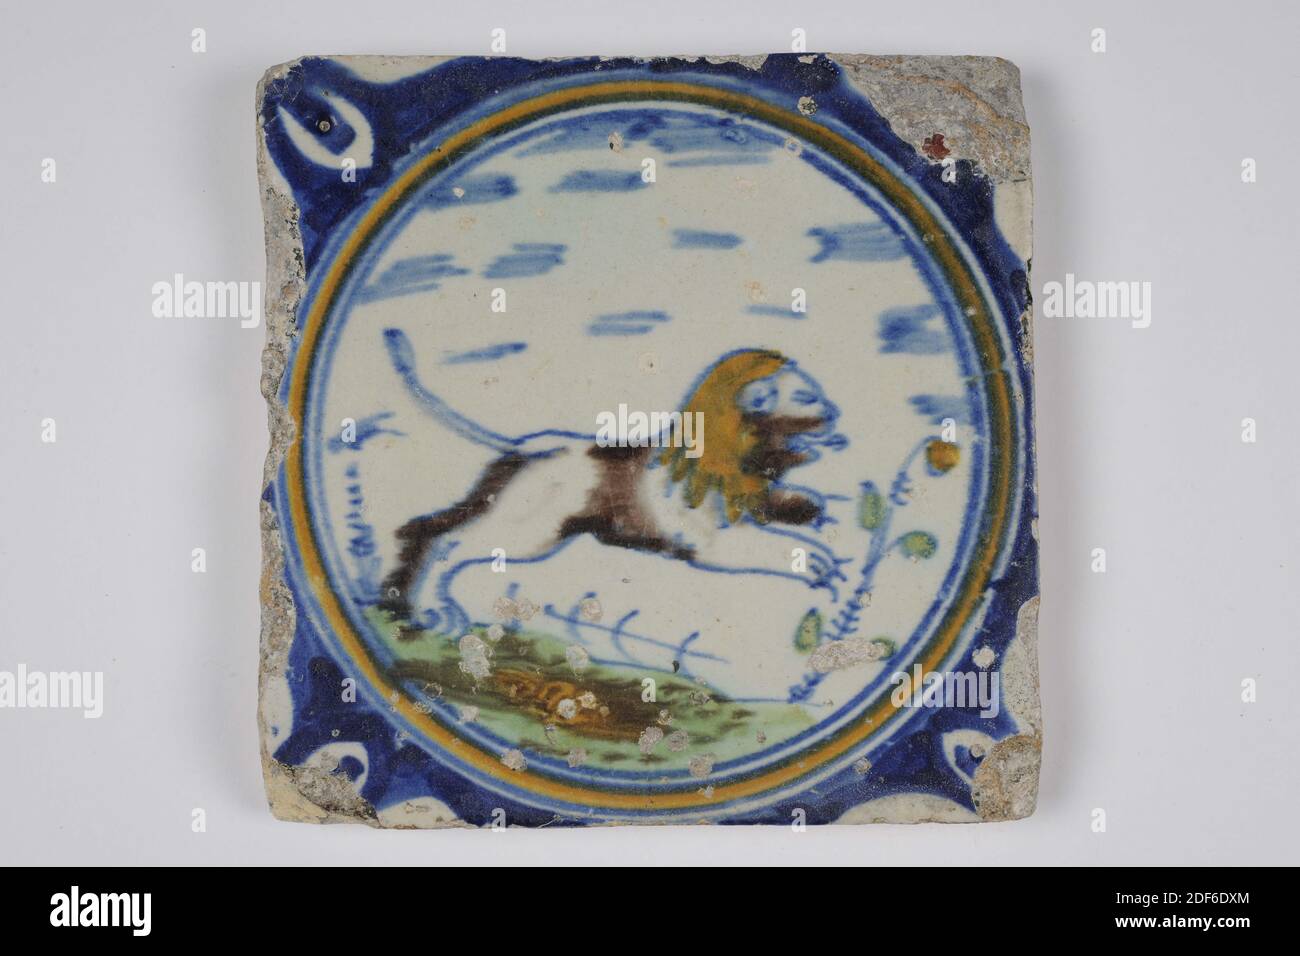 Carreau de mur, Anonyme, entre 1640-1700, glaçure d'étain, faïence, général: 13.4 x 13.4 x 1,2cm (134 x 134 x 12mm), lion, carreau de mur de faïence recouvert de glaçure d'étain et peint en bleu. La tuile représente un lion bondissant orienté vers la droite. La tuile a une tête de boeuf comme un motif de coin, Date 1995 Banque D'Images